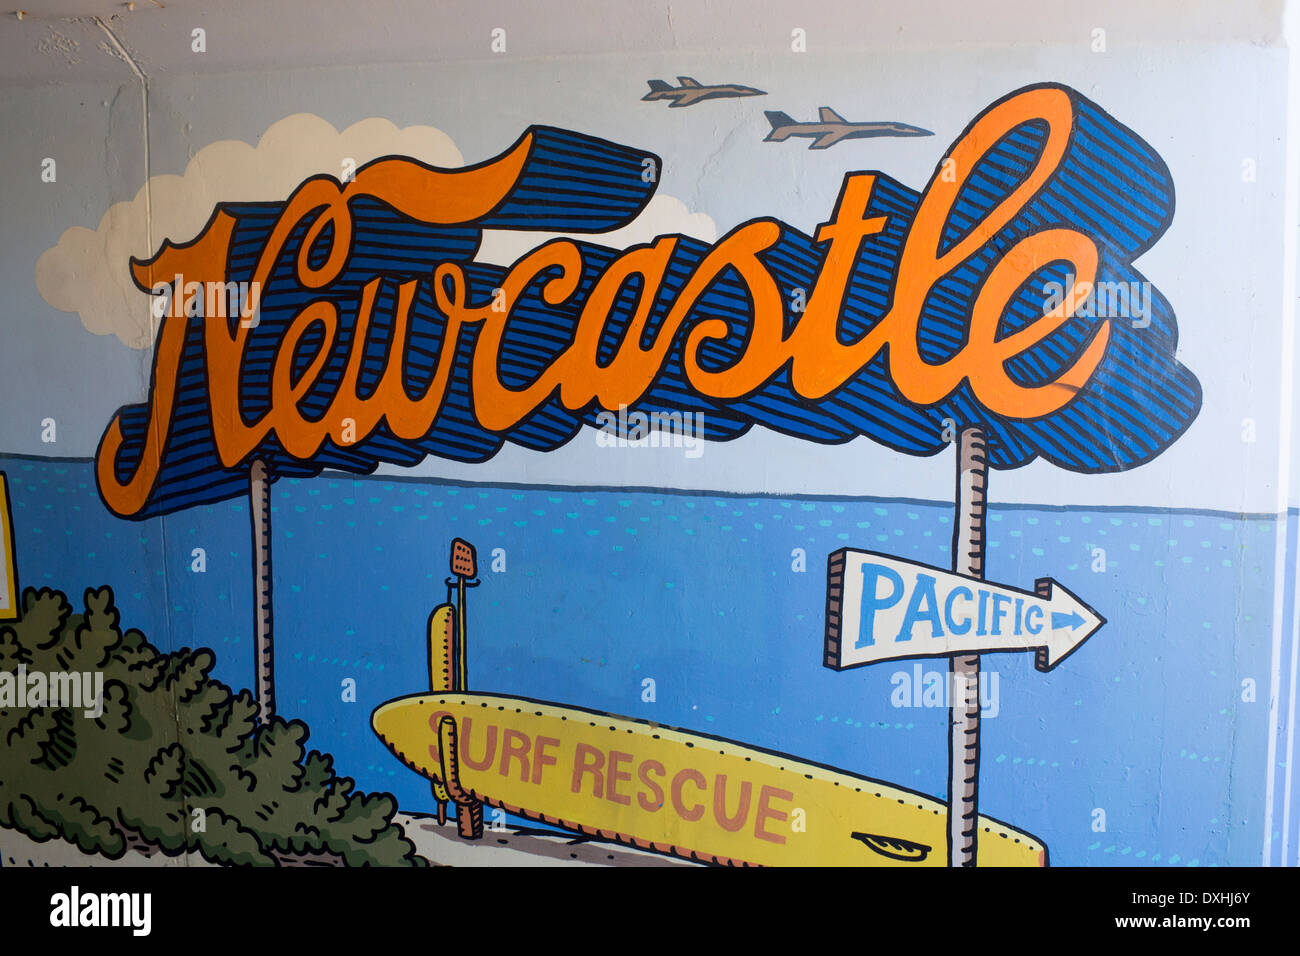 Newcastle Beach et l'océan Pacifique artwork murale dans le métro souterrain tunnel Newcastle NSW Australie Nouvelle Galles du Sud Banque D'Images